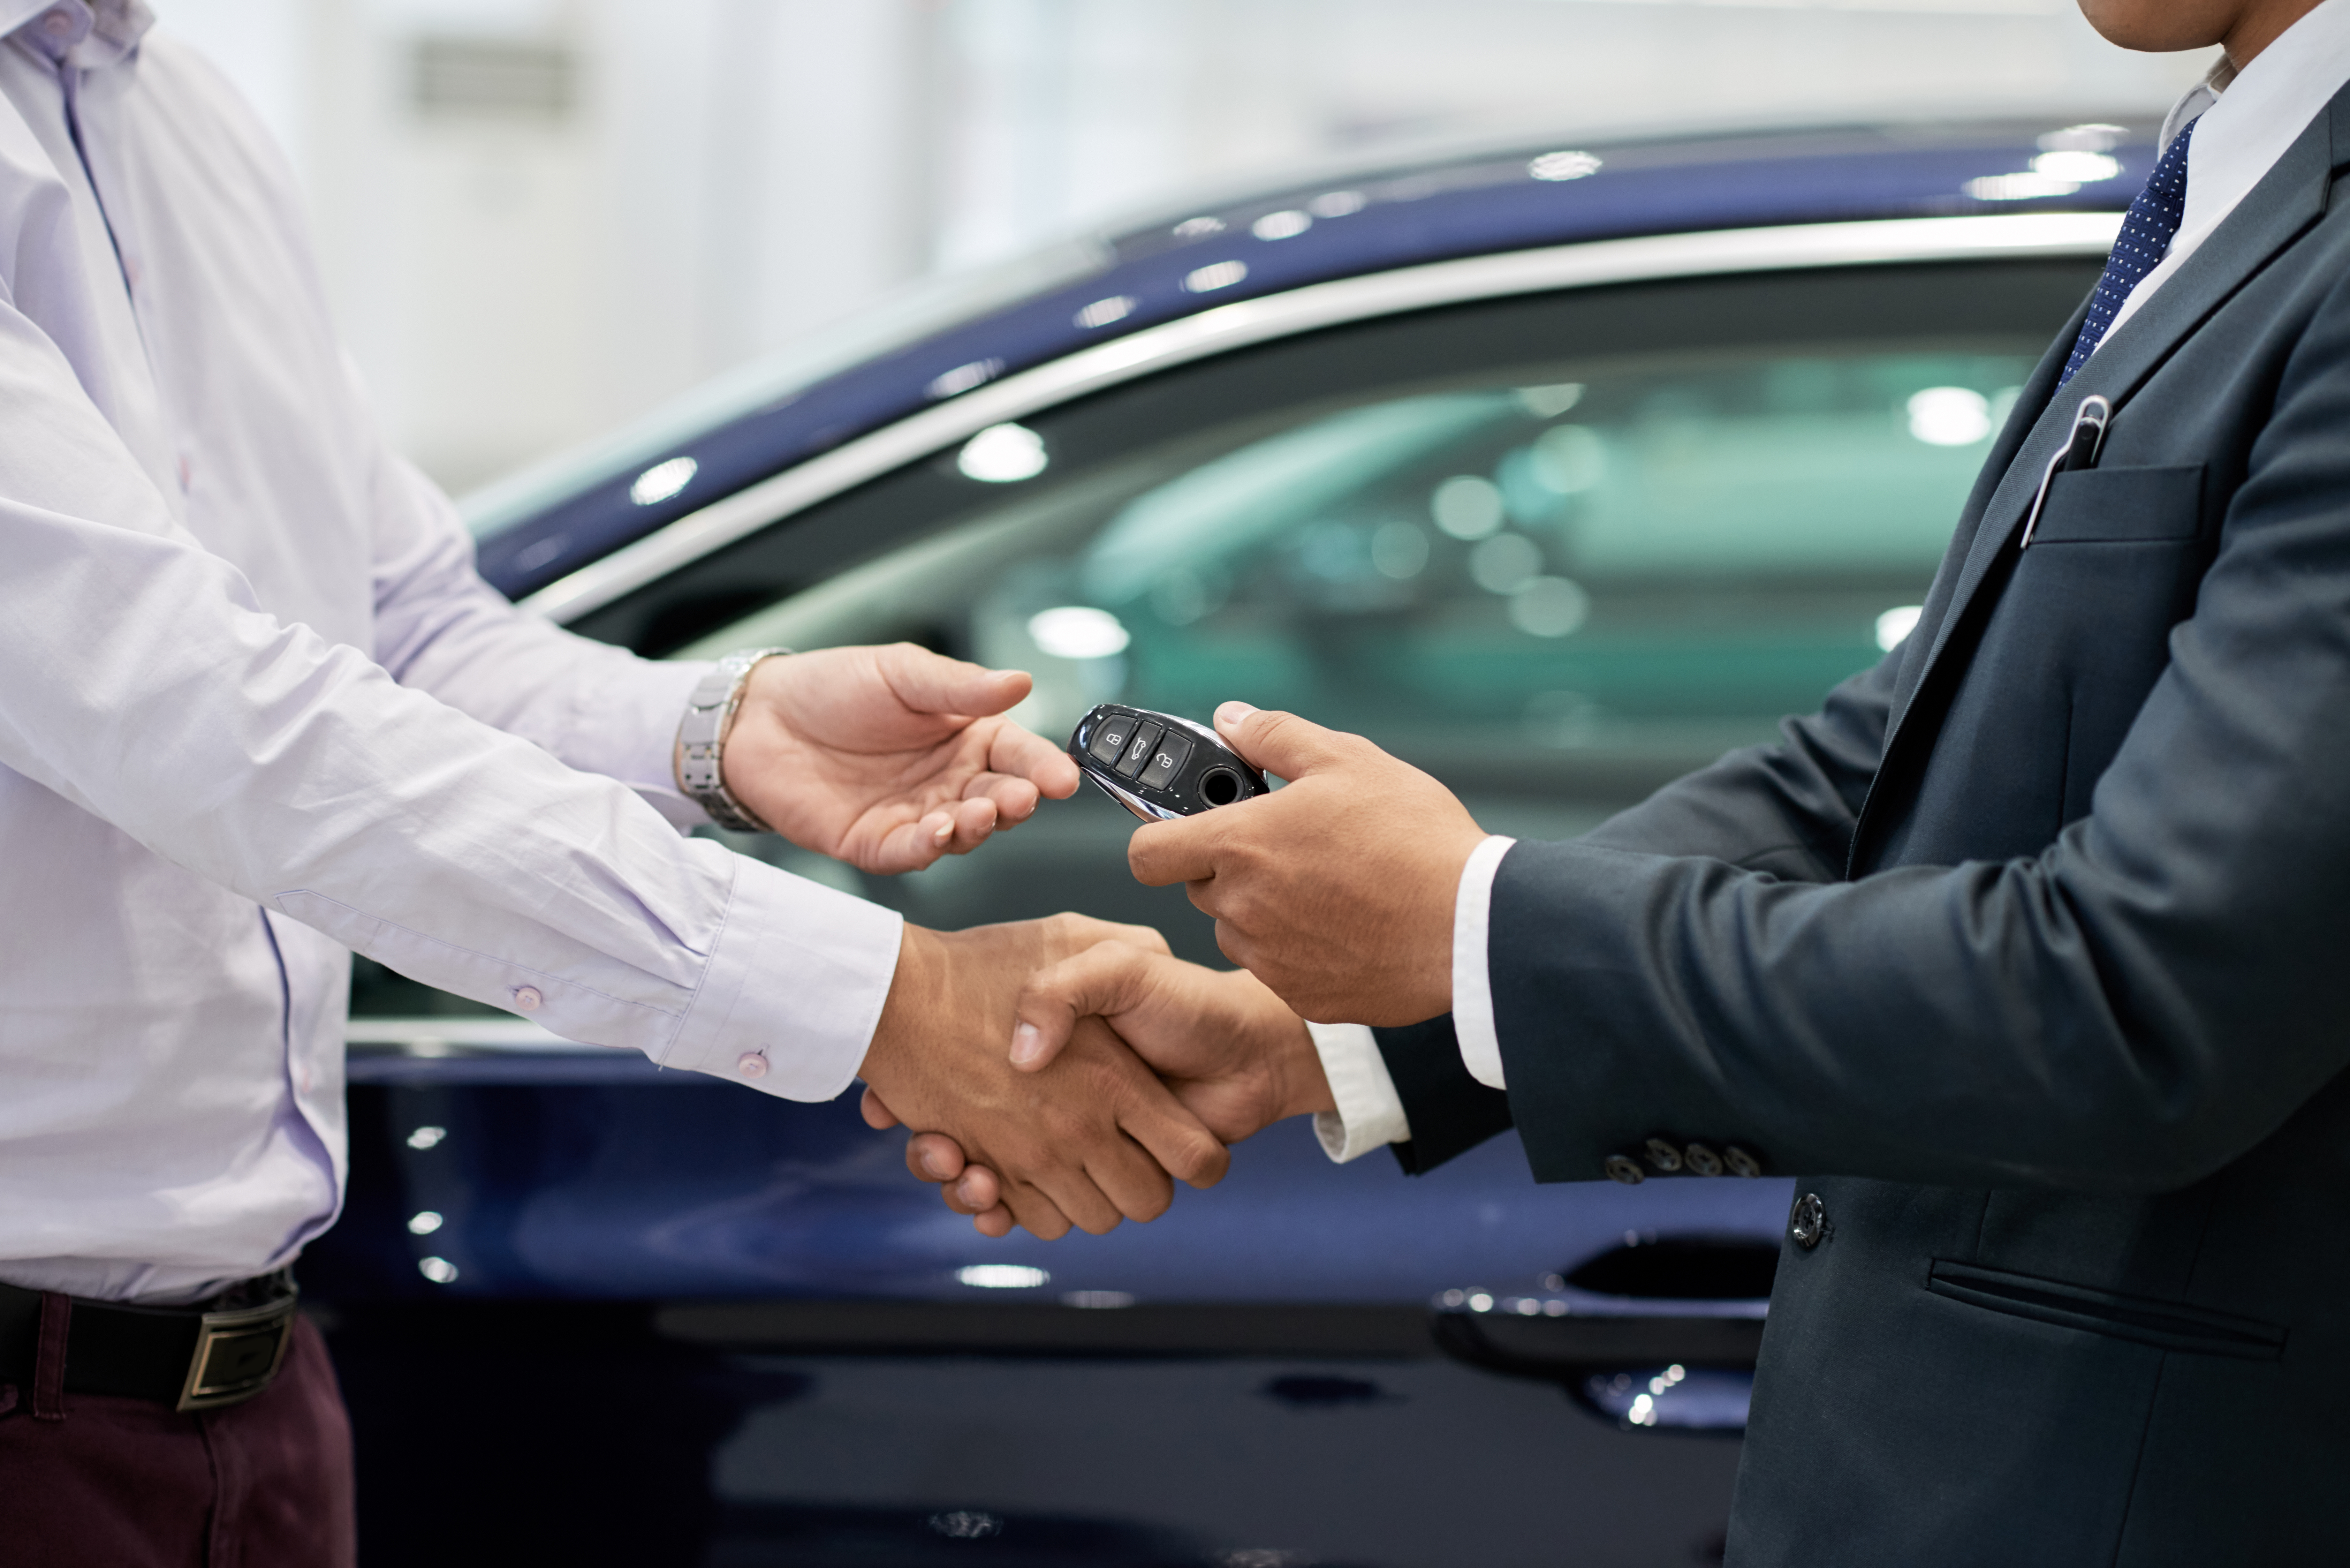 Conheça nossas dicas para economizar na hora de comprar seu carro. Fonte: AdobeStock